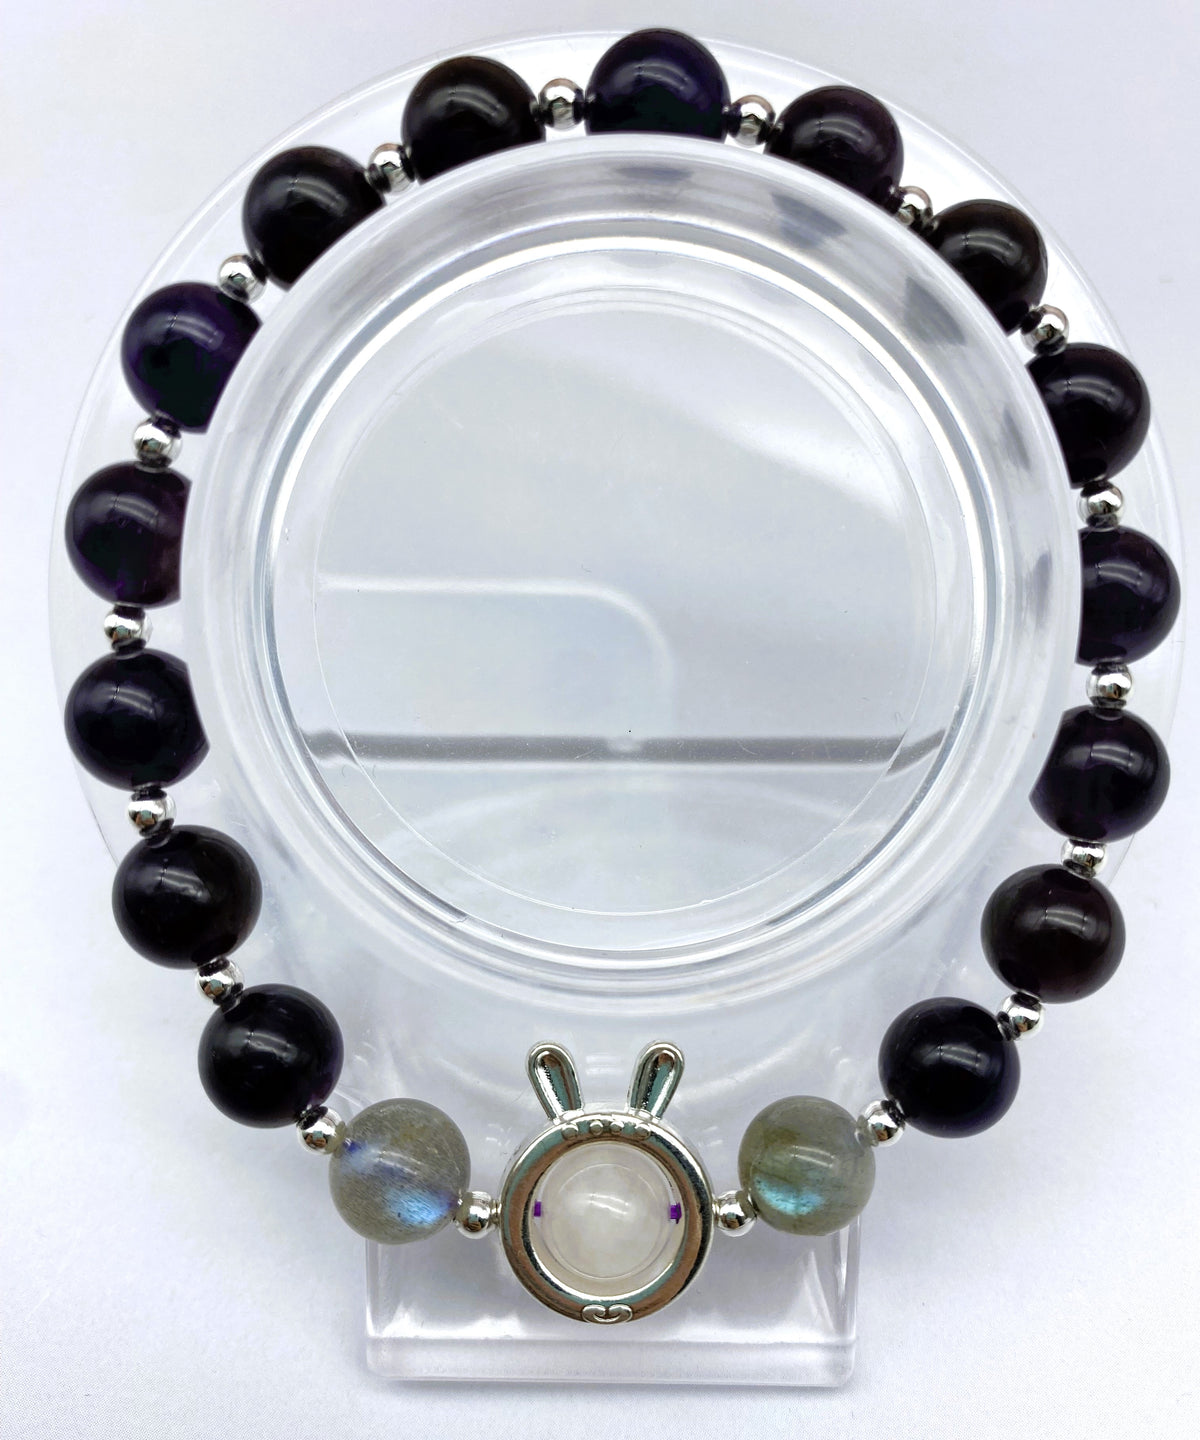 Stunning Design Amethyst Bracelet Collection 8mm Adjustable Natural Gemstone Bracelet Healing Crystal Energy Quartz Chakras